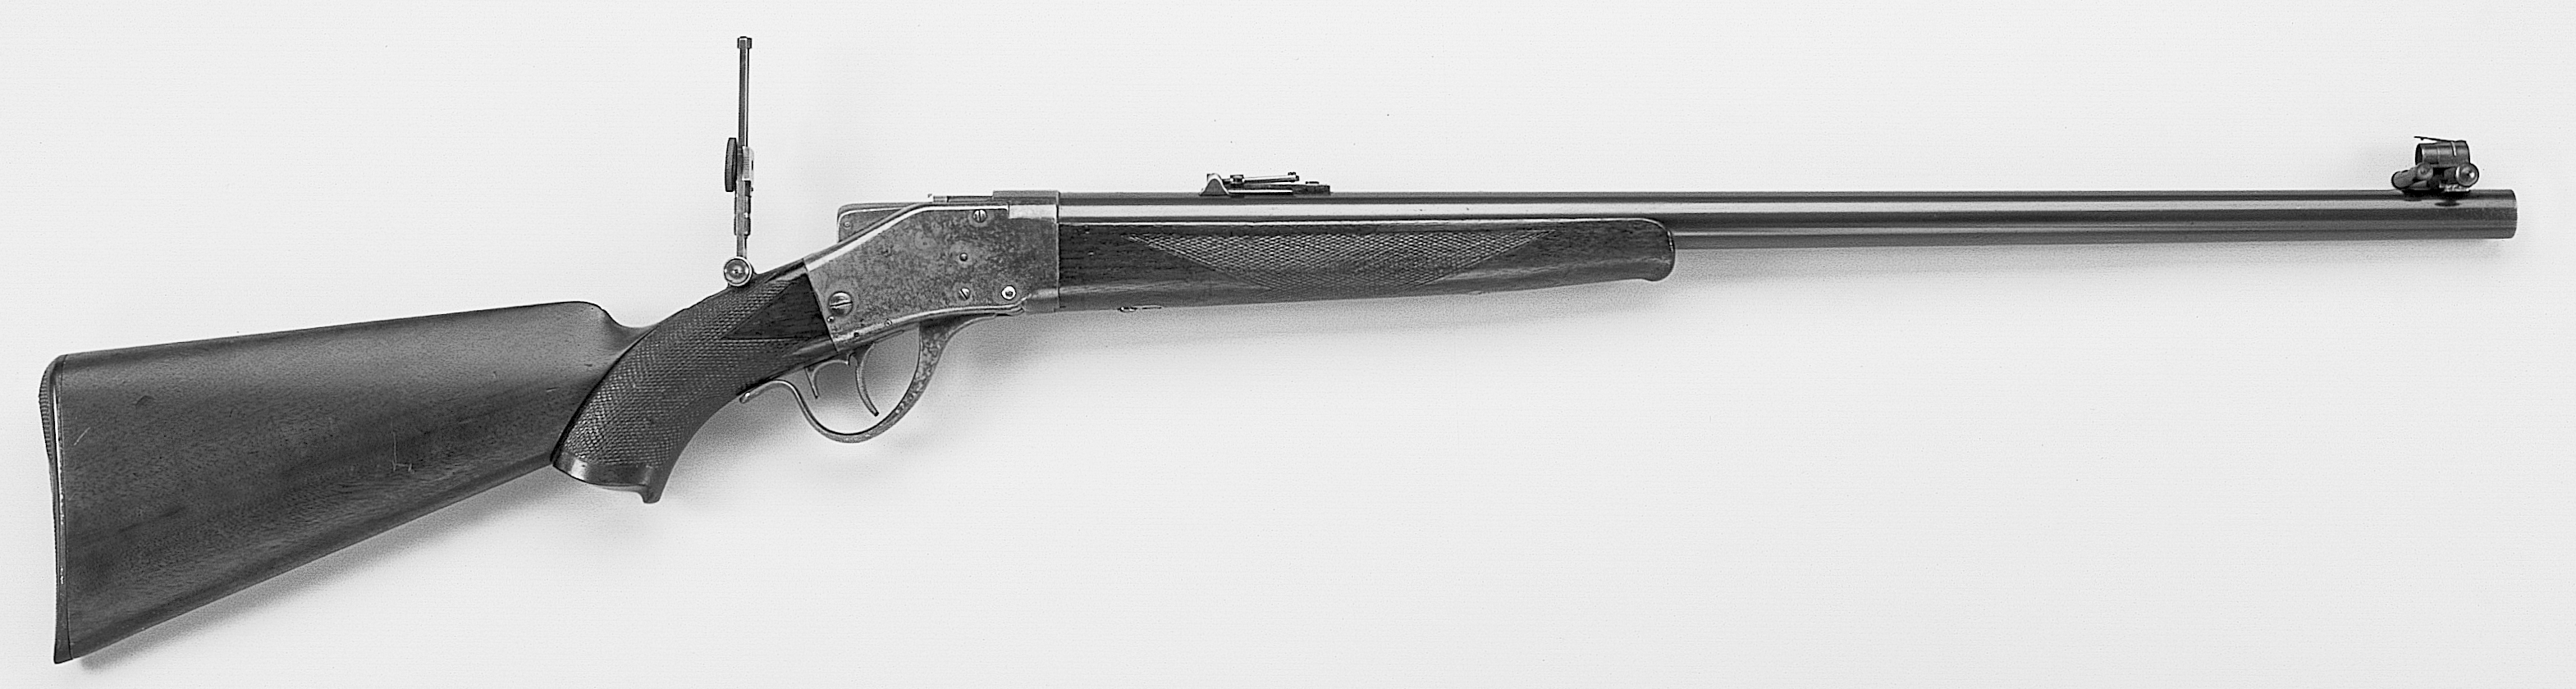 Model 1878 Sharps Borchardt Short-Range Rifle